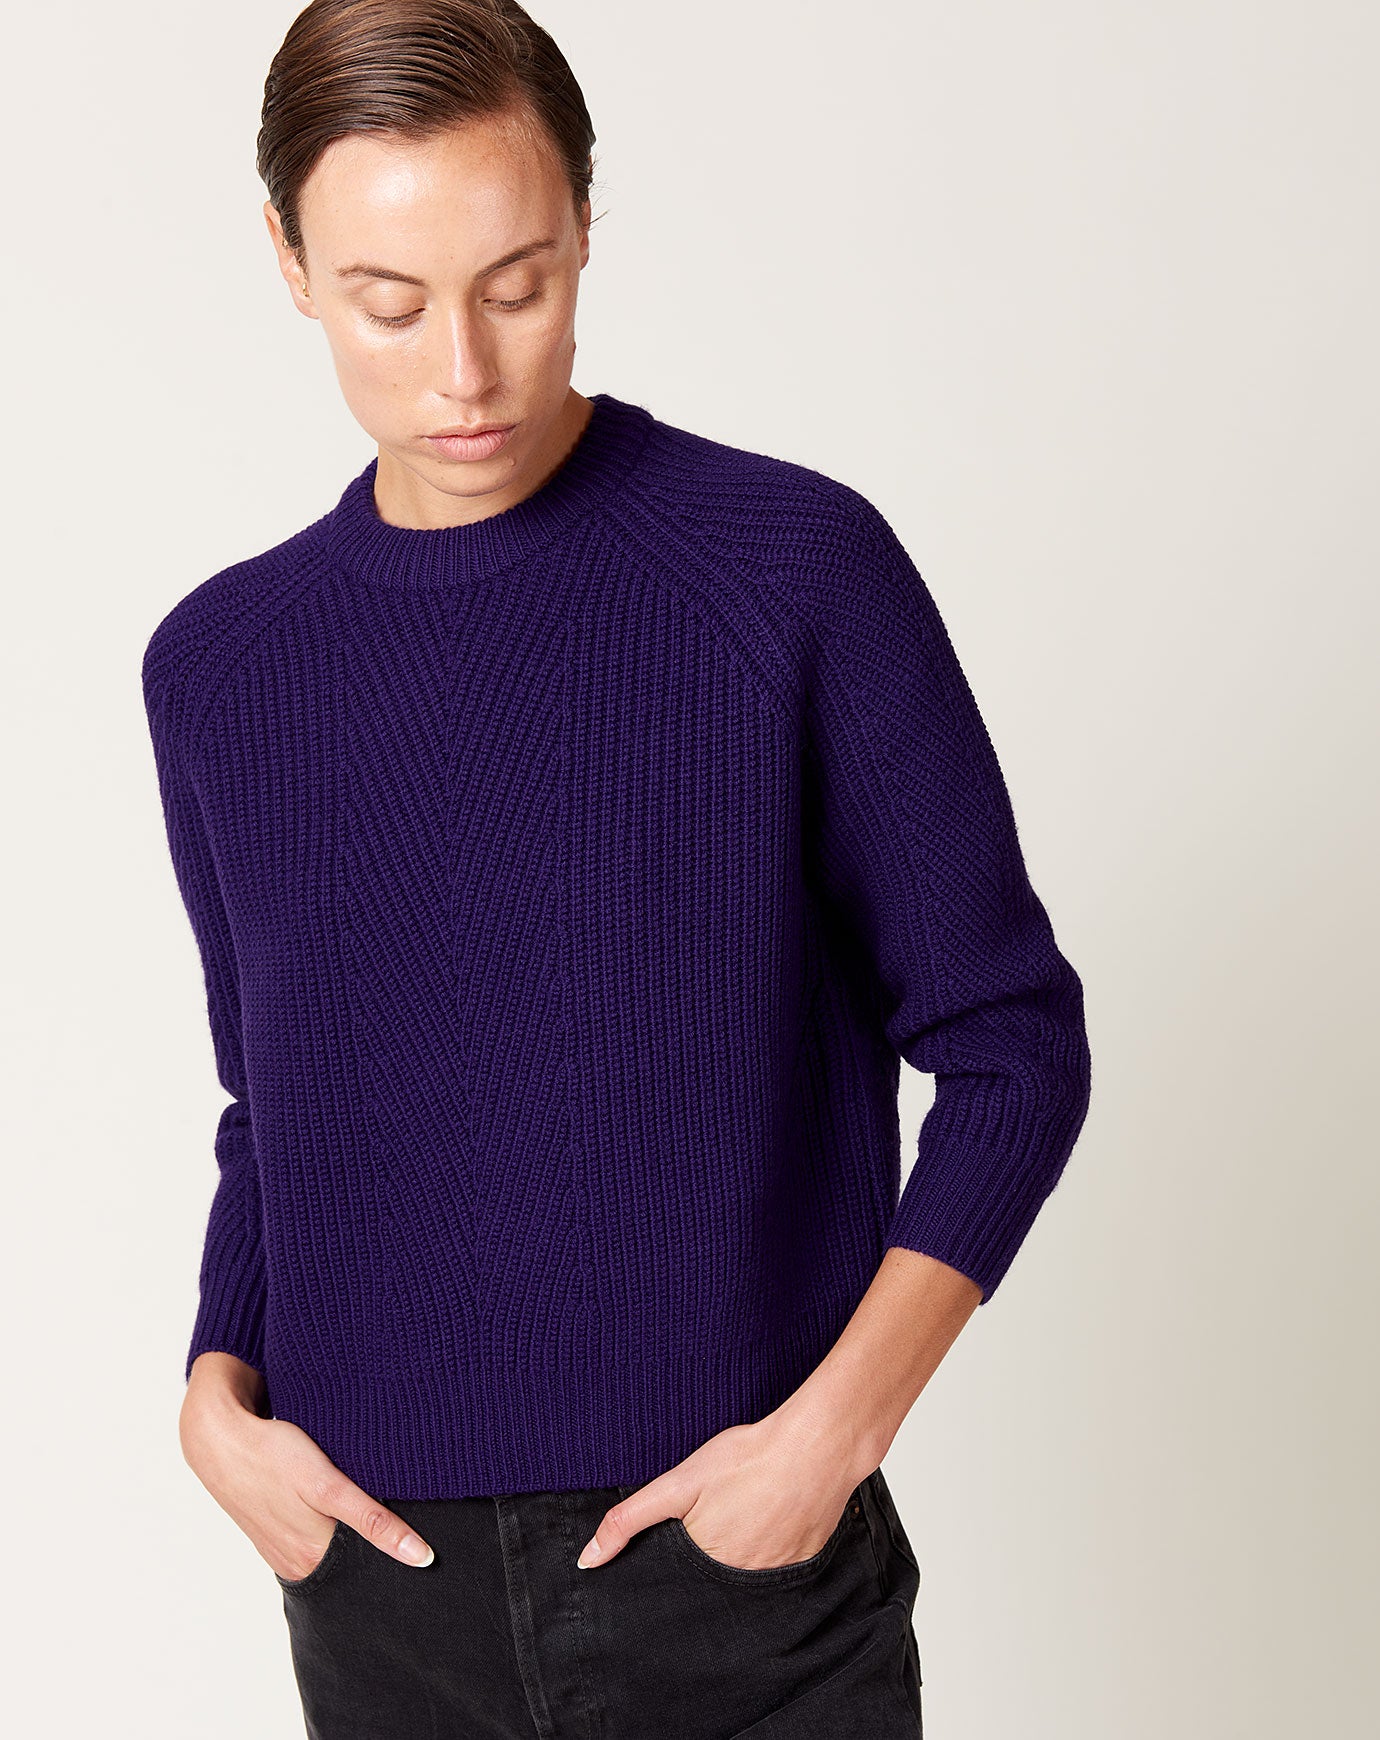 Demylee Chelsea Sweater in Purple Night